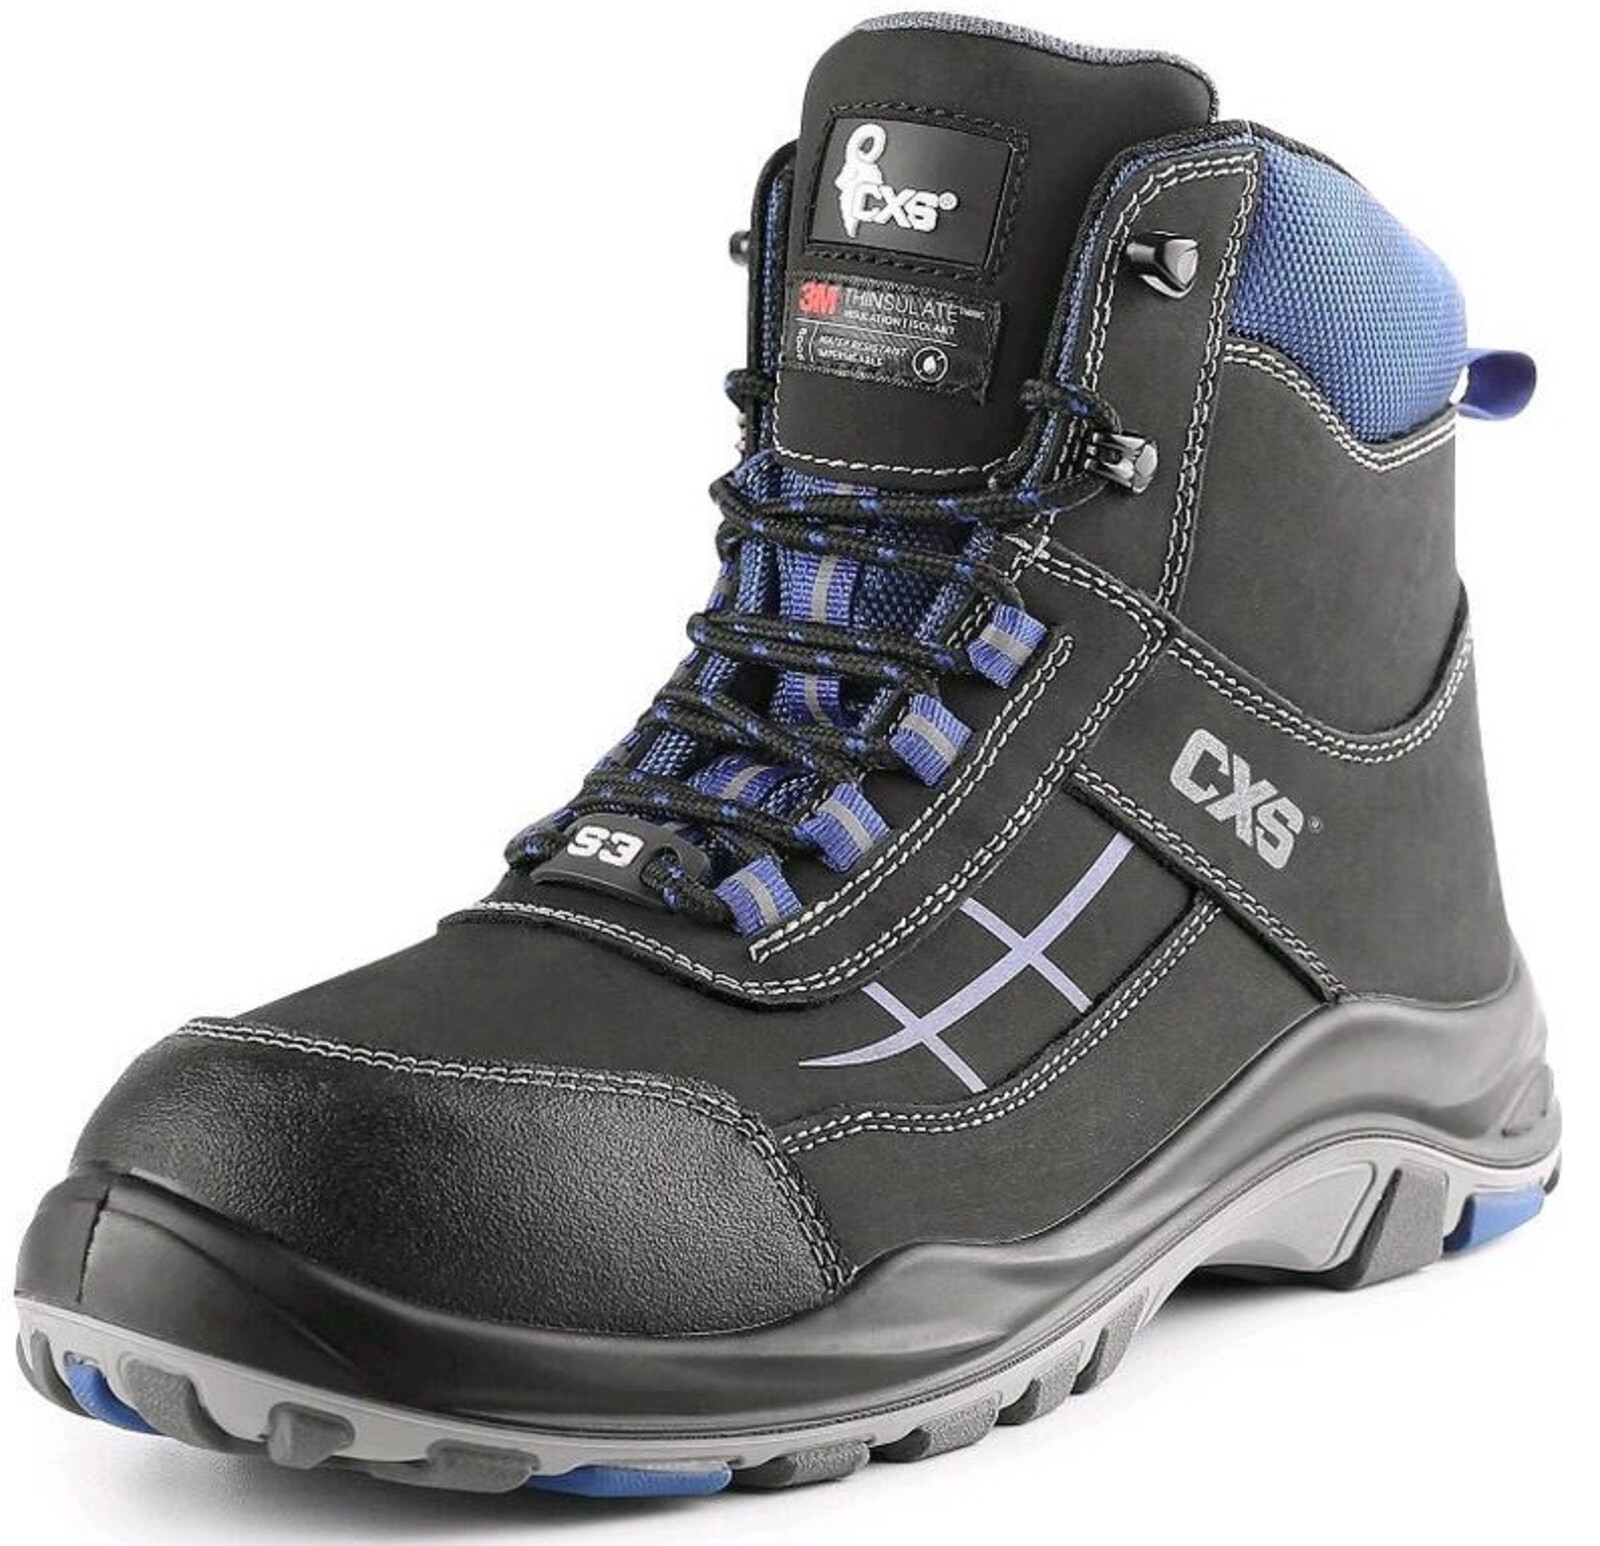 Zateplená bezpečnostná členková obuv CXS Dog Malamute S3 CI SRC - veľkosť: 39, farba: čierna/modrá